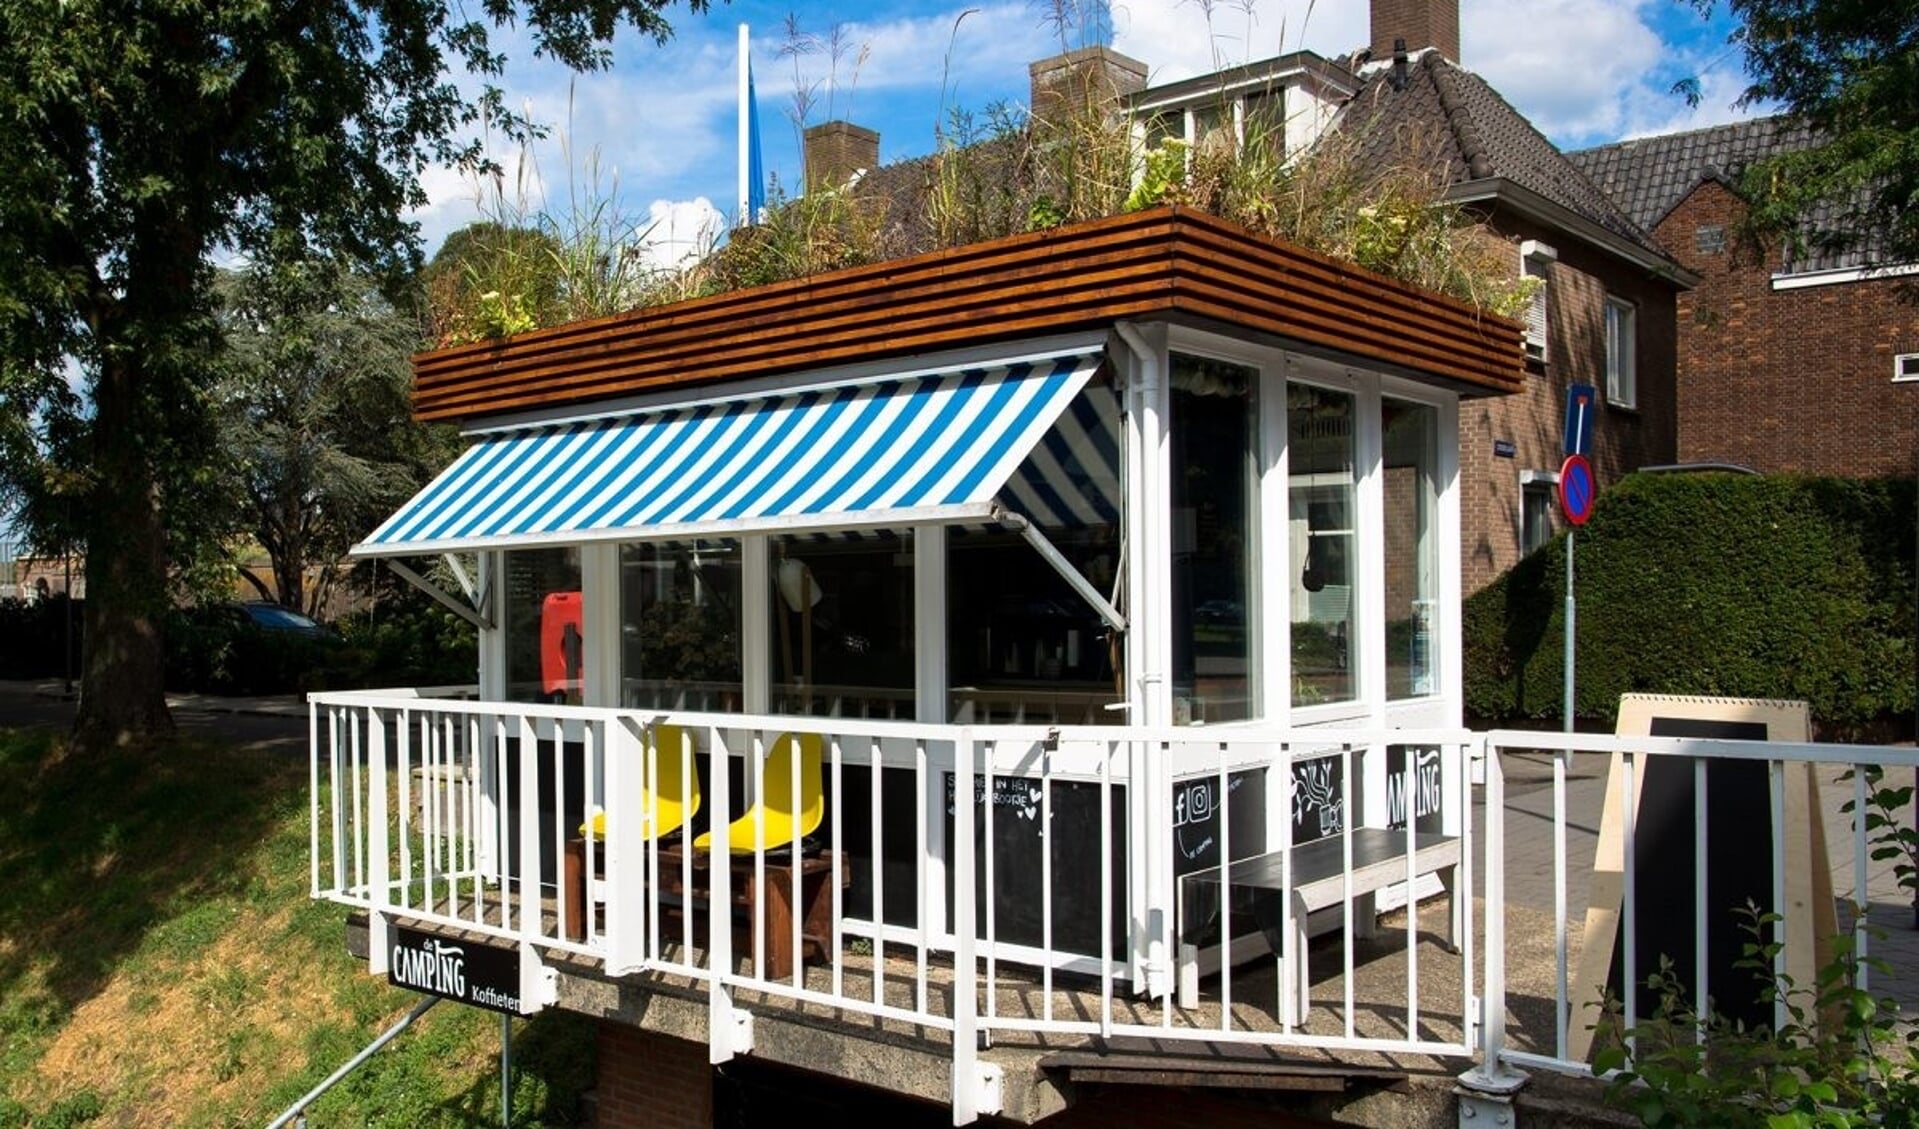 Winnaar in de categorie Klein werd De Camping koffietent, een ontwerp van architectenbureau Annarchi.